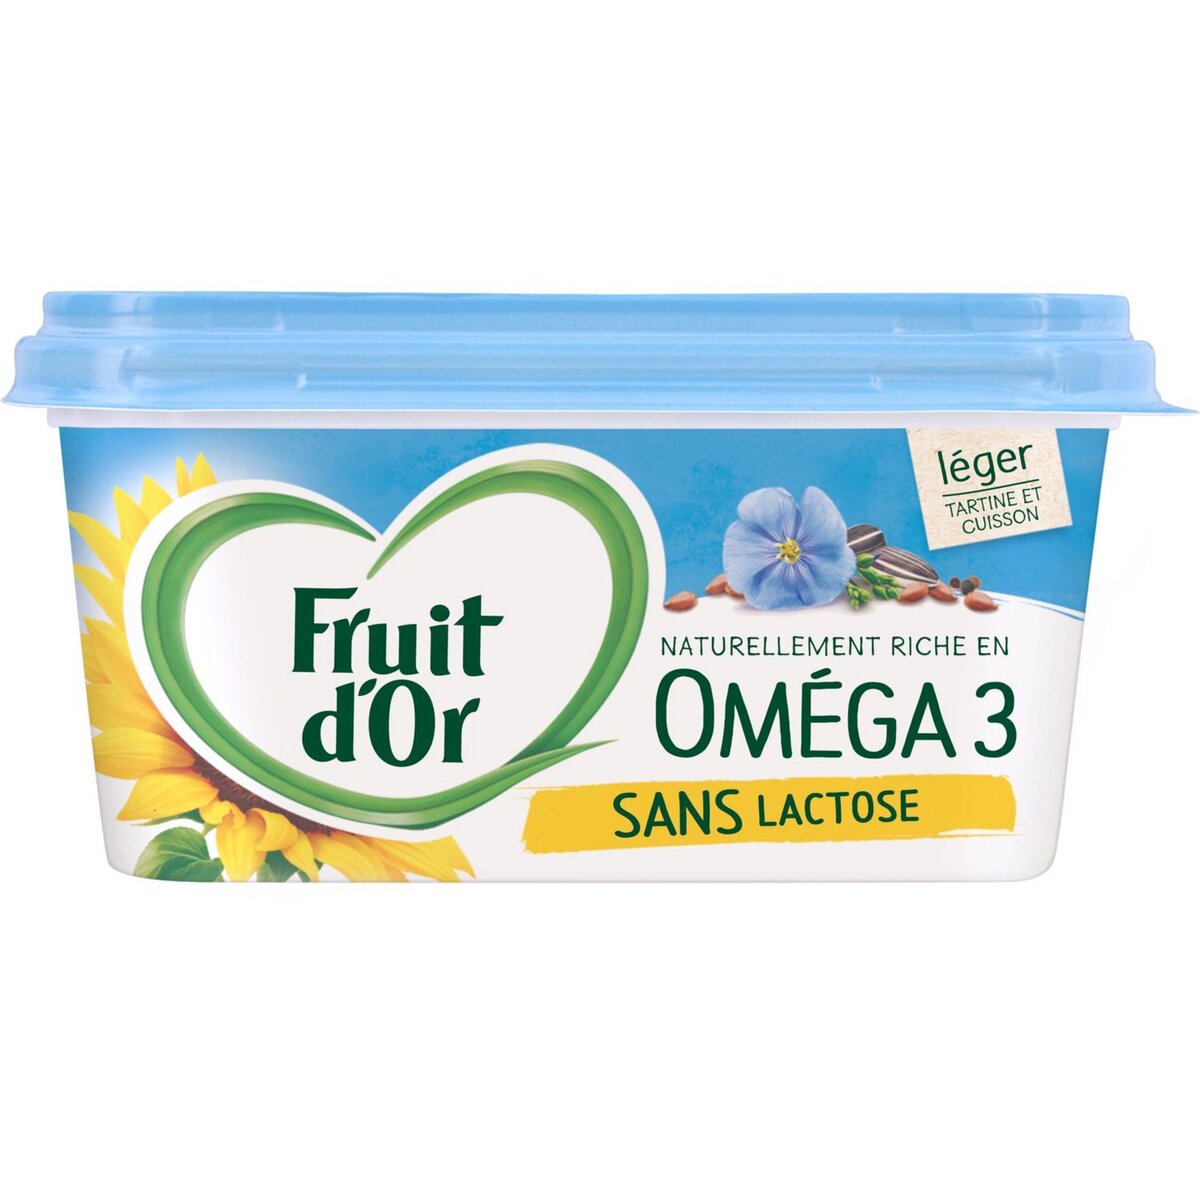 FRUIT D'OR Fruit d'or margarine oméga 3 leger & sans lactose doux 510g